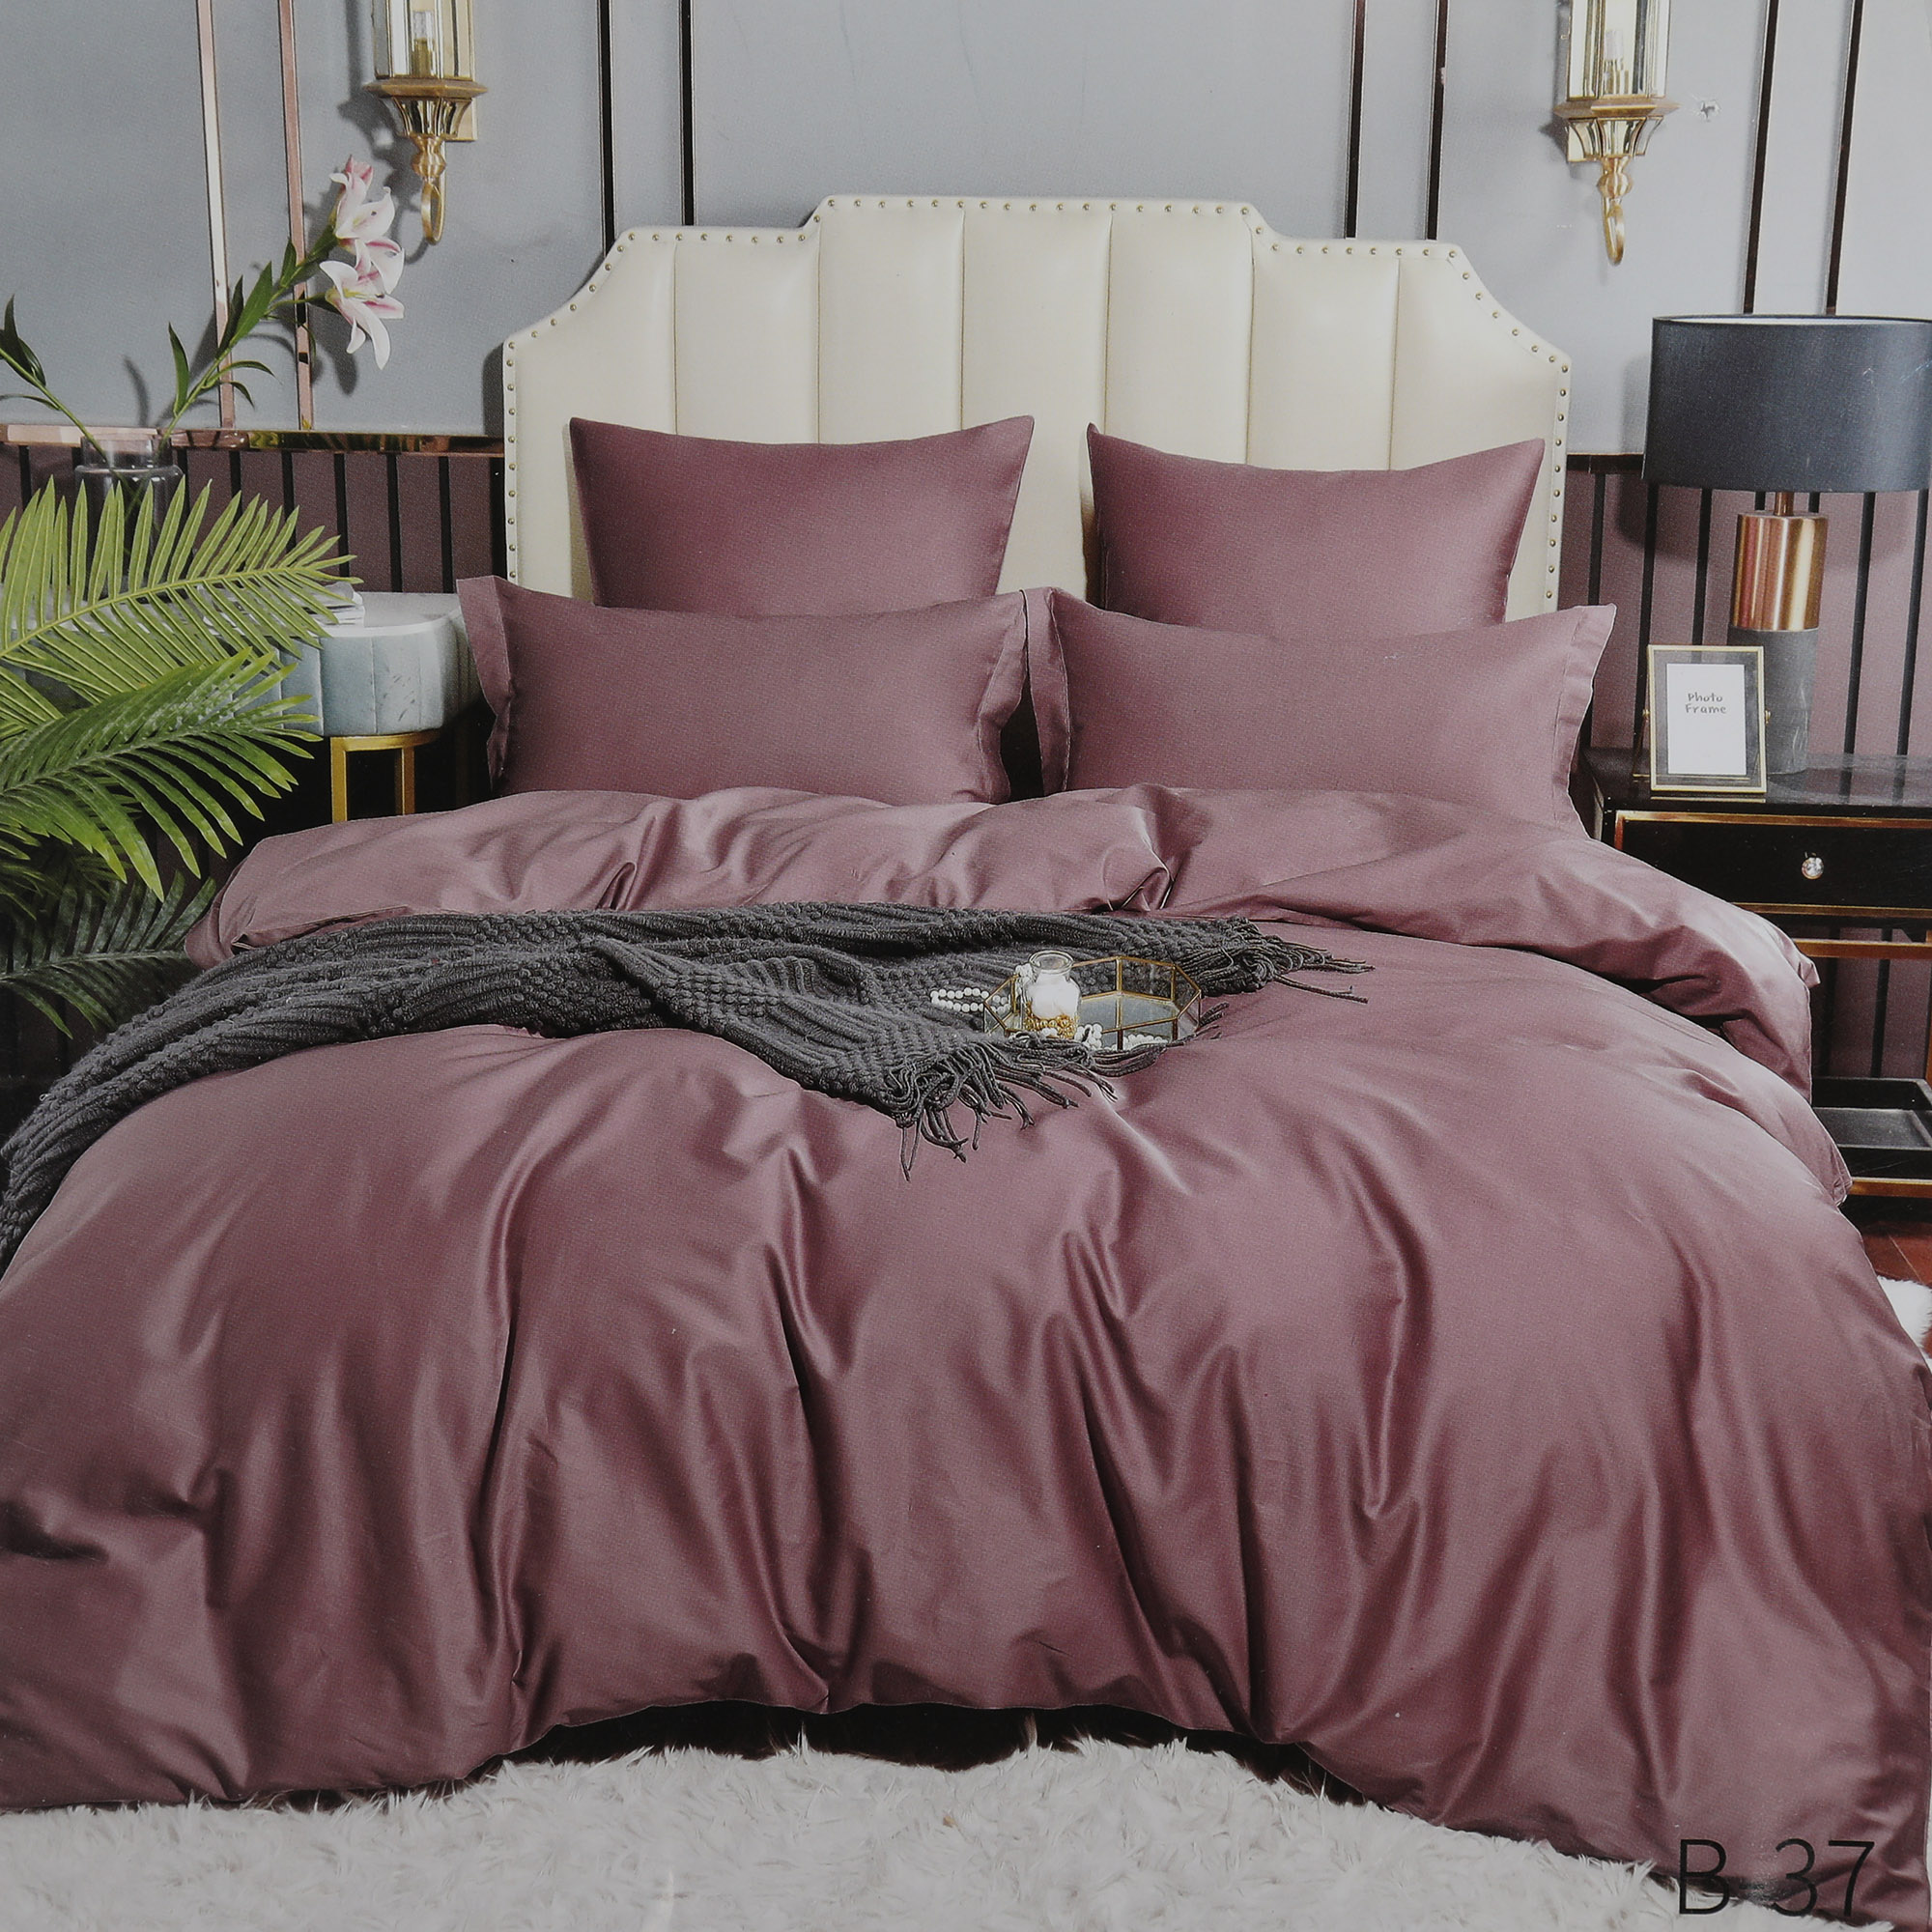 Комплект постельного белья Wonne Traum Elegance Pastel Purple семейный постельный комплект wonne traum elegance colibri семейный